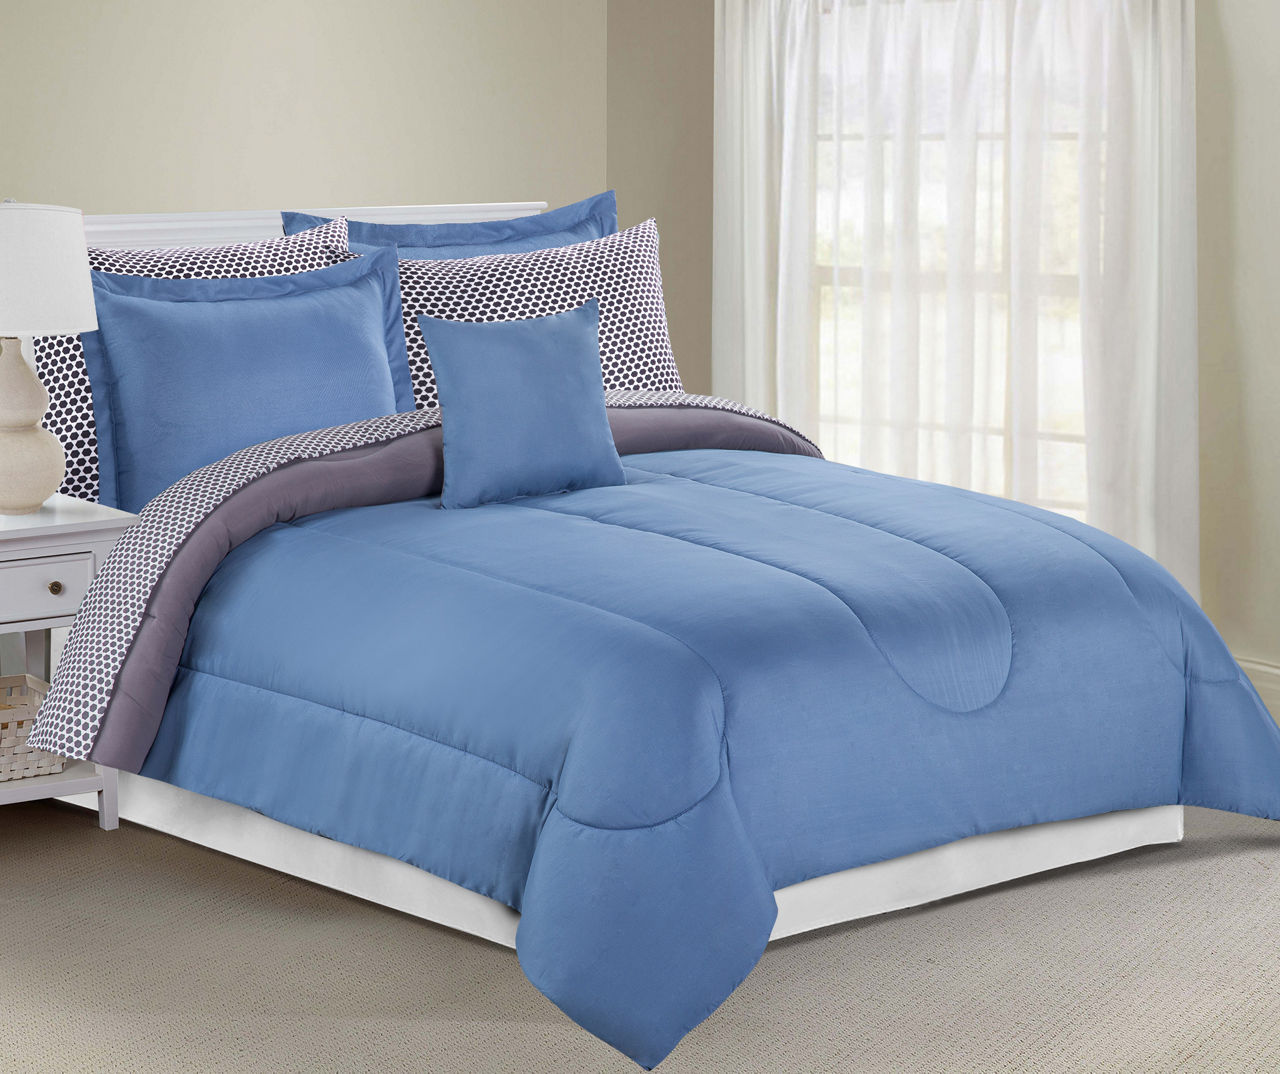 Solid Blue & Gray Queen 8-Piece Comforter Set